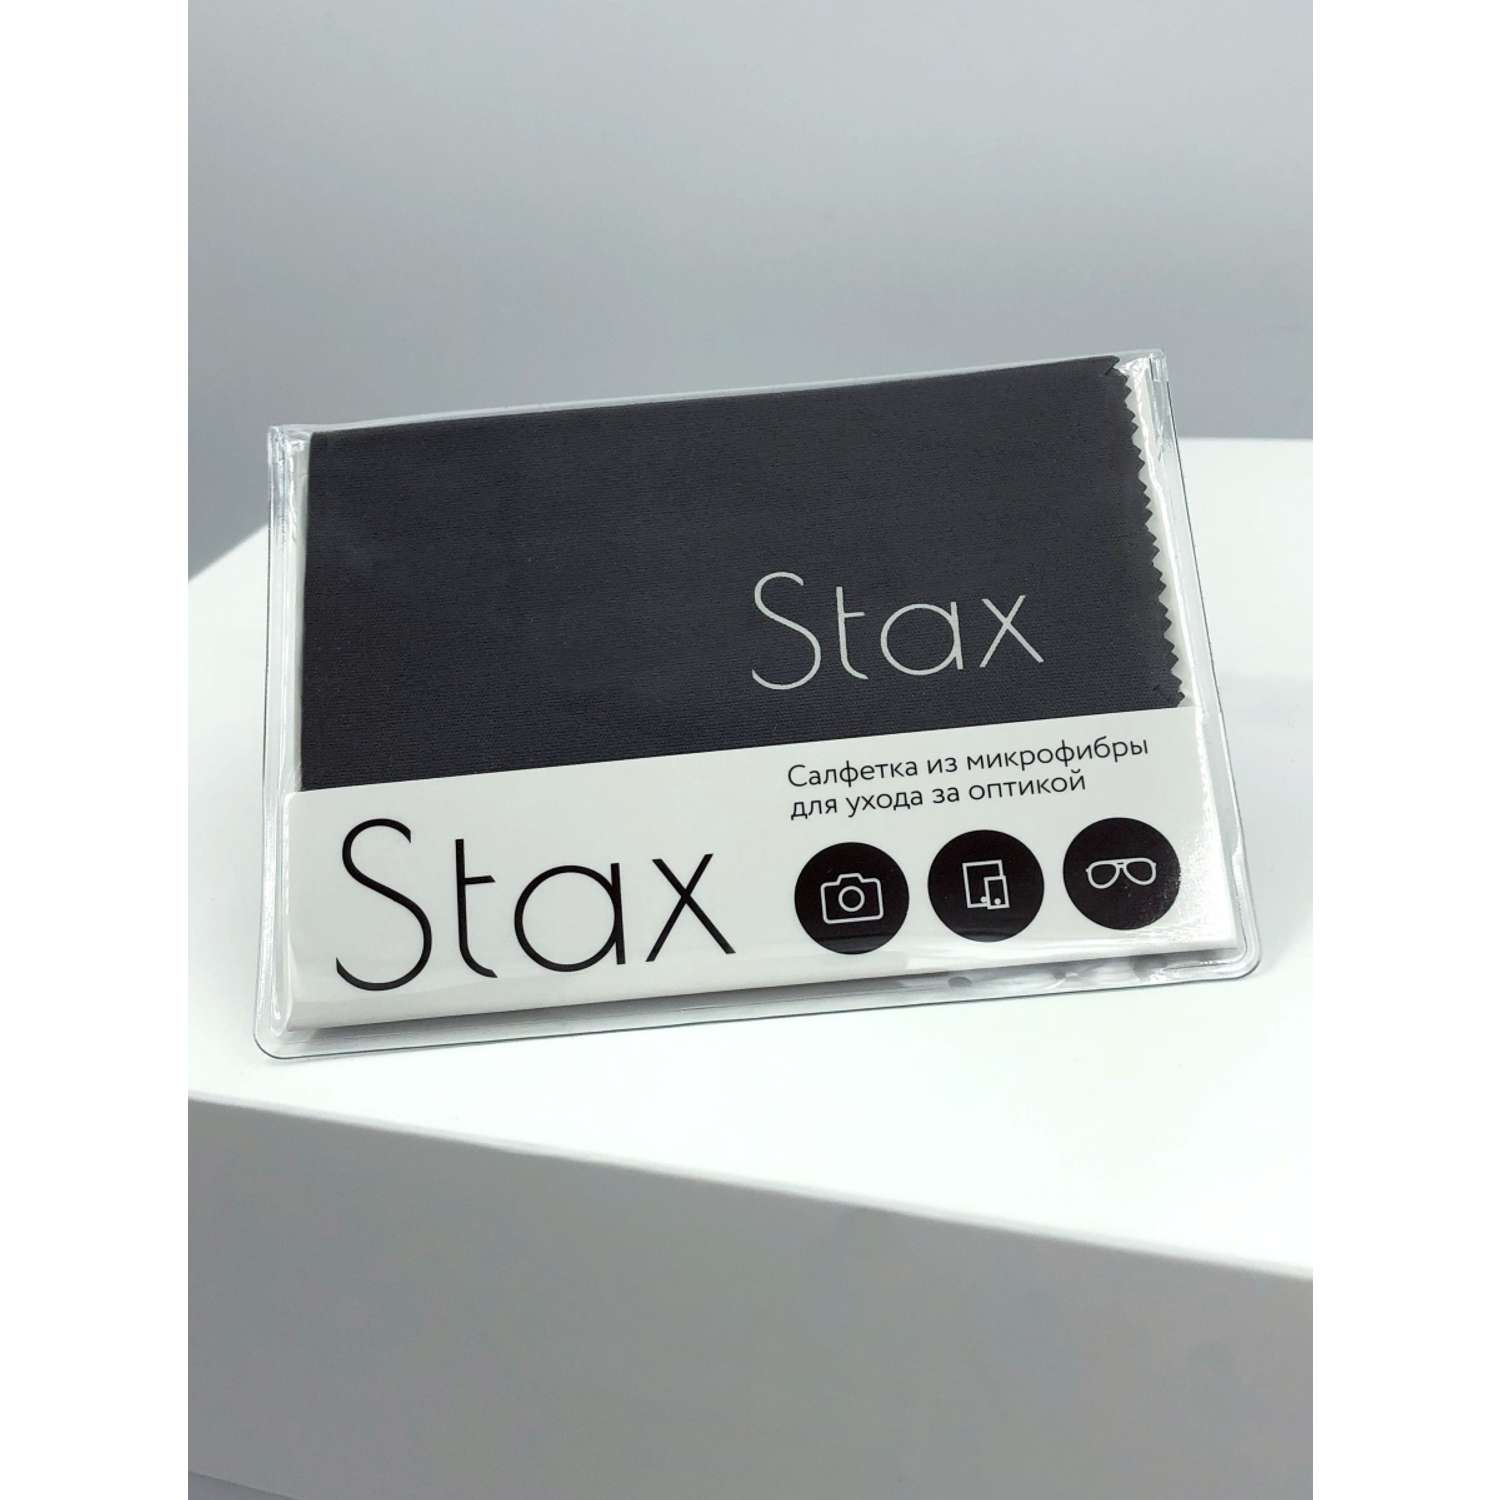 Салфетка для очков и оптики Stax сфэ-с - фото 1